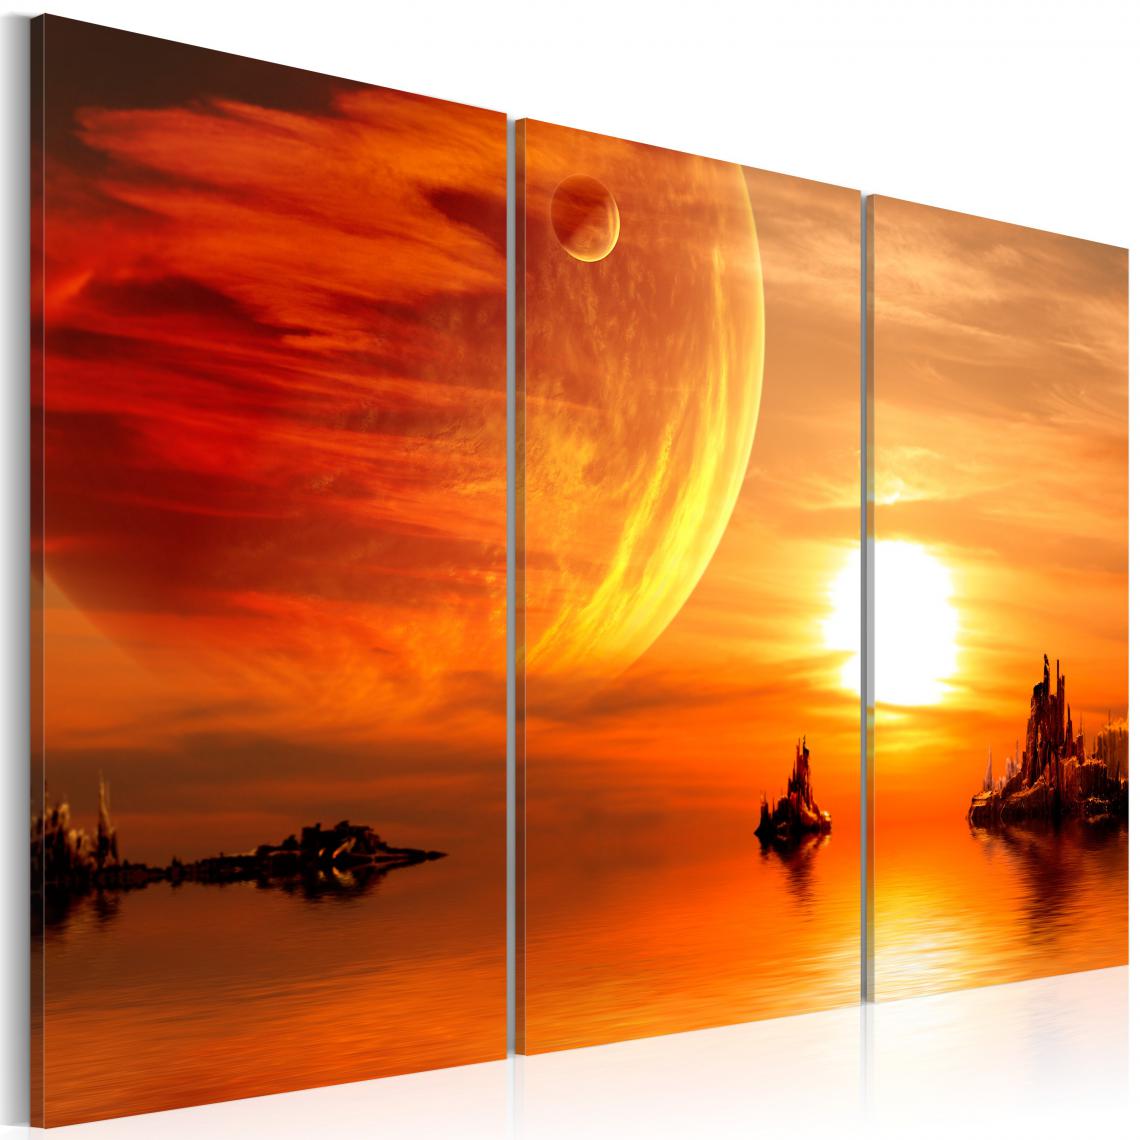 Decoshop26 - Tableau sur toile en 3 panneaux décoration murale image imprimée cadre en bois à suspendre Coucher du soleil romantique 90x60 cm 11_0009426 - Tableaux, peintures